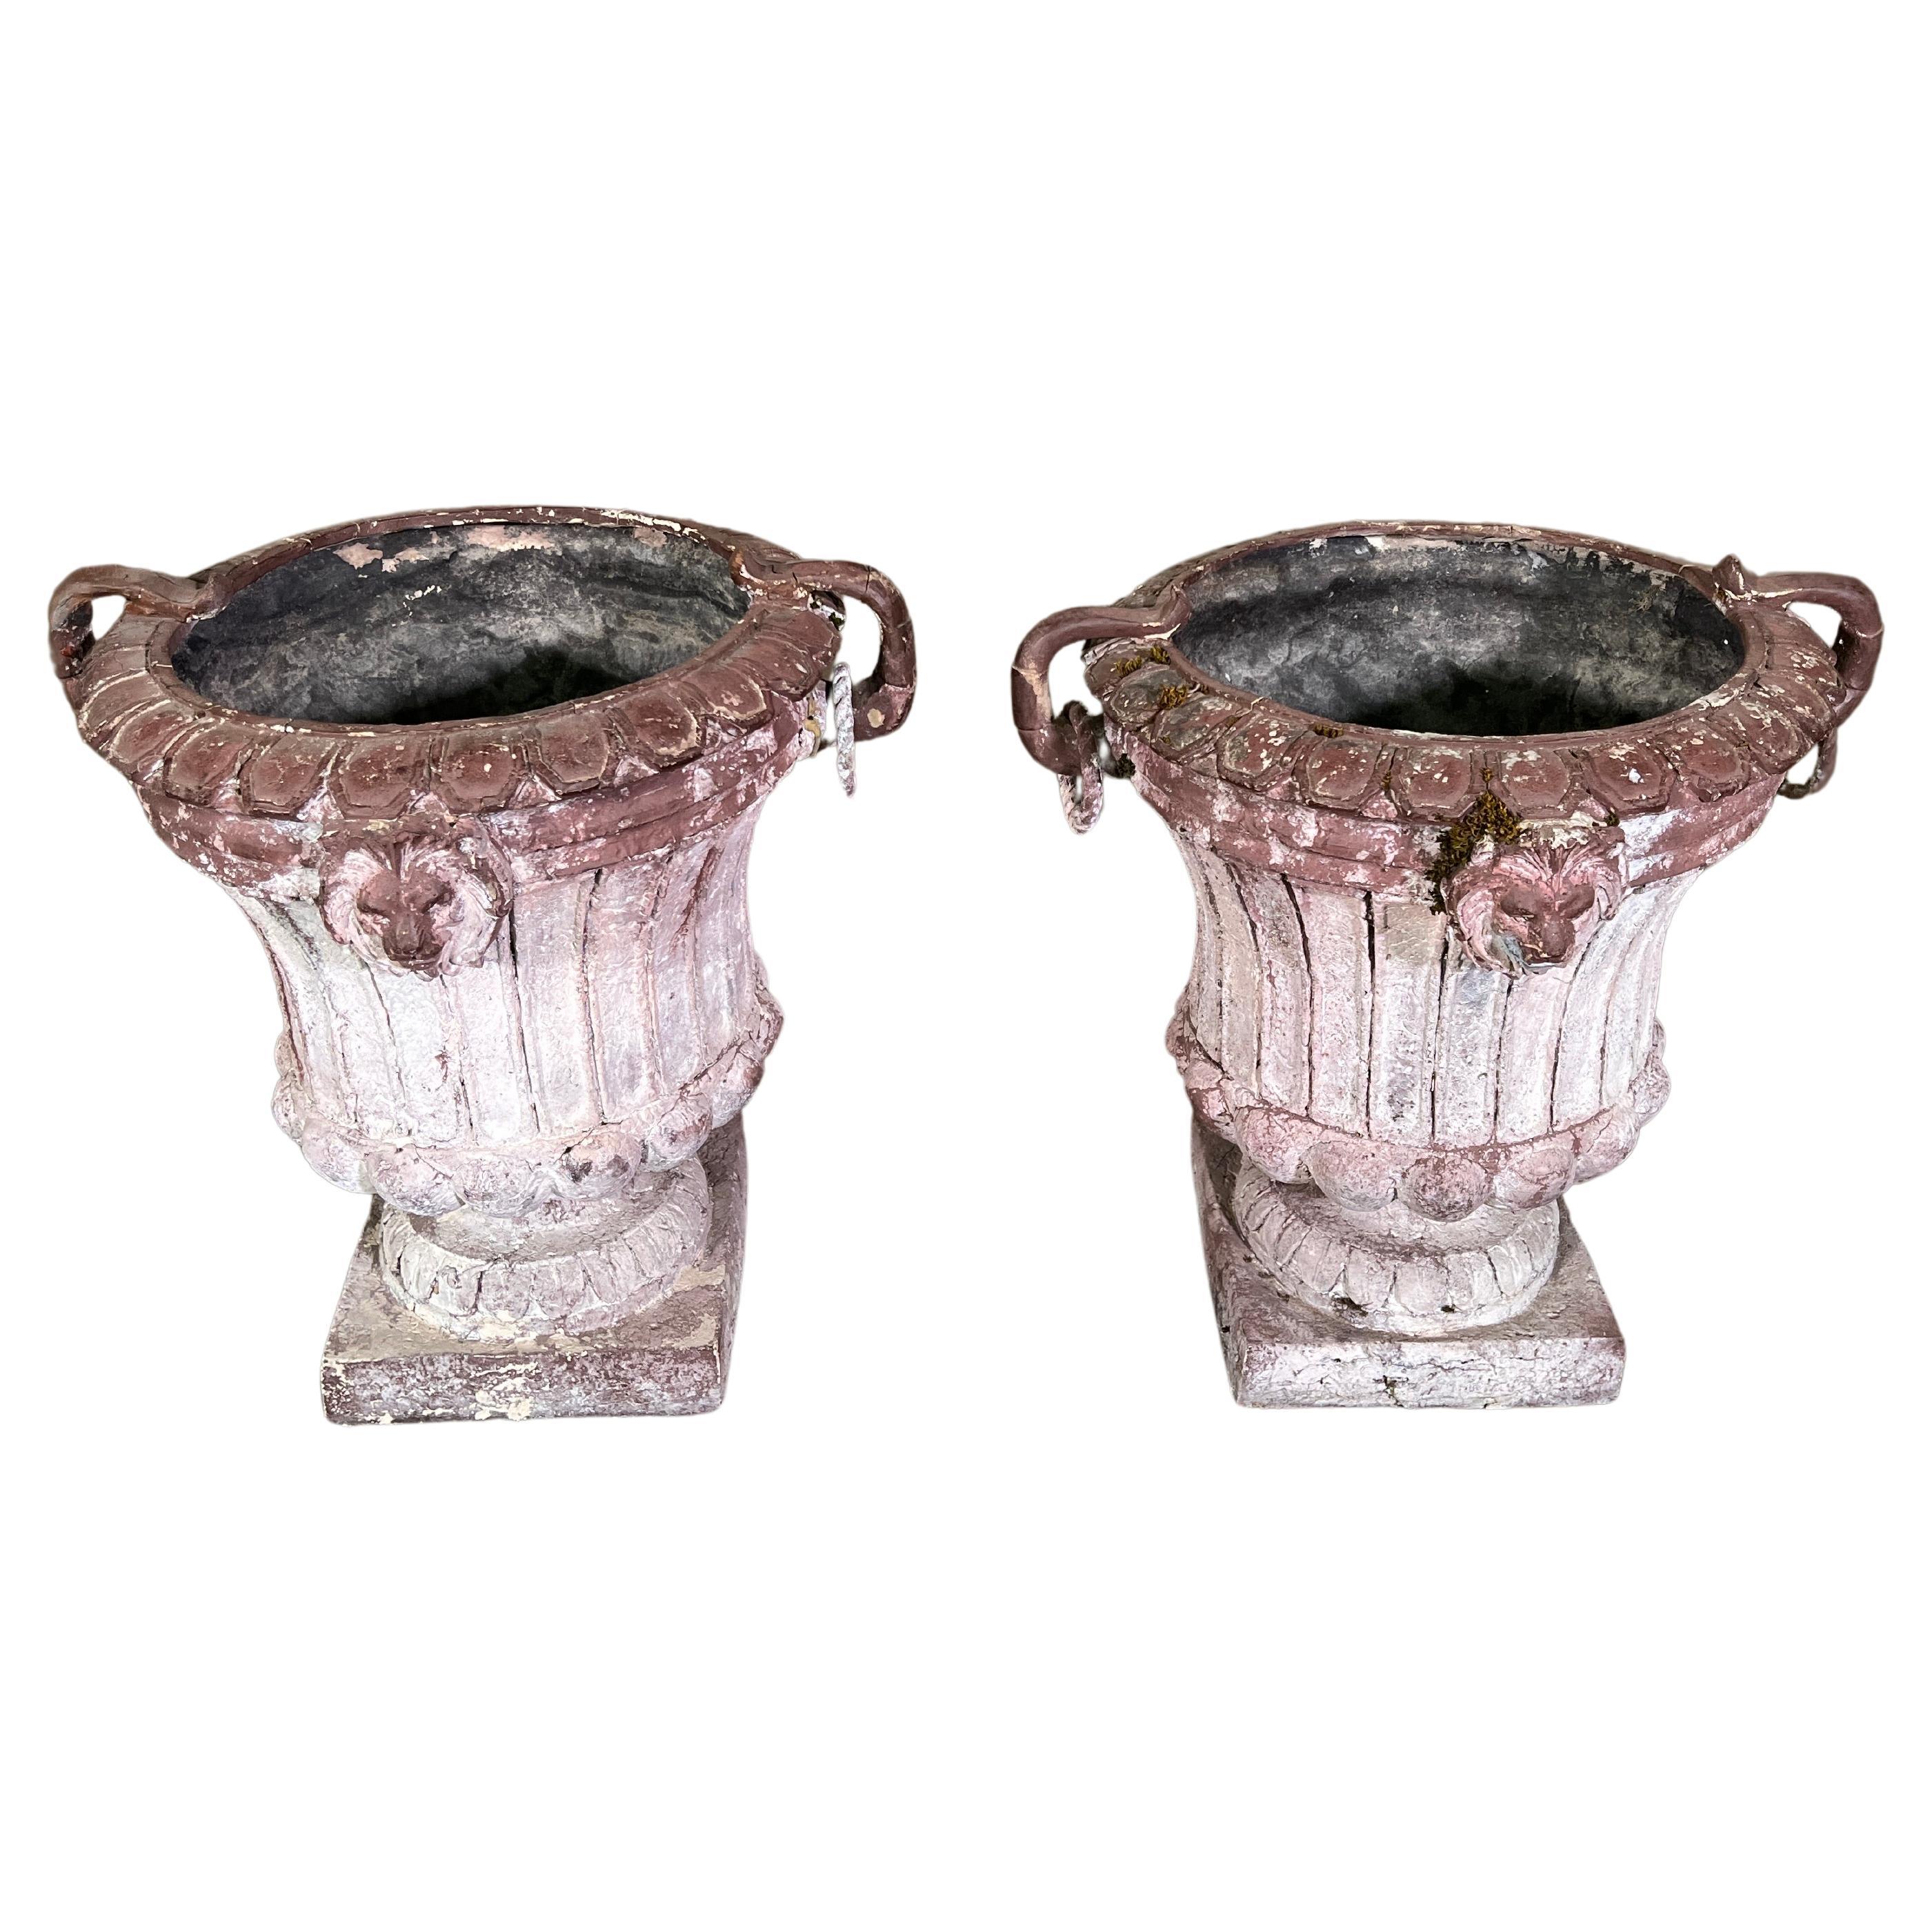 Urnen aus Zink im Louis-XVI-Stil Napoleon III.-Stil des 19. Jahrhunderts. Schöne Patina. 